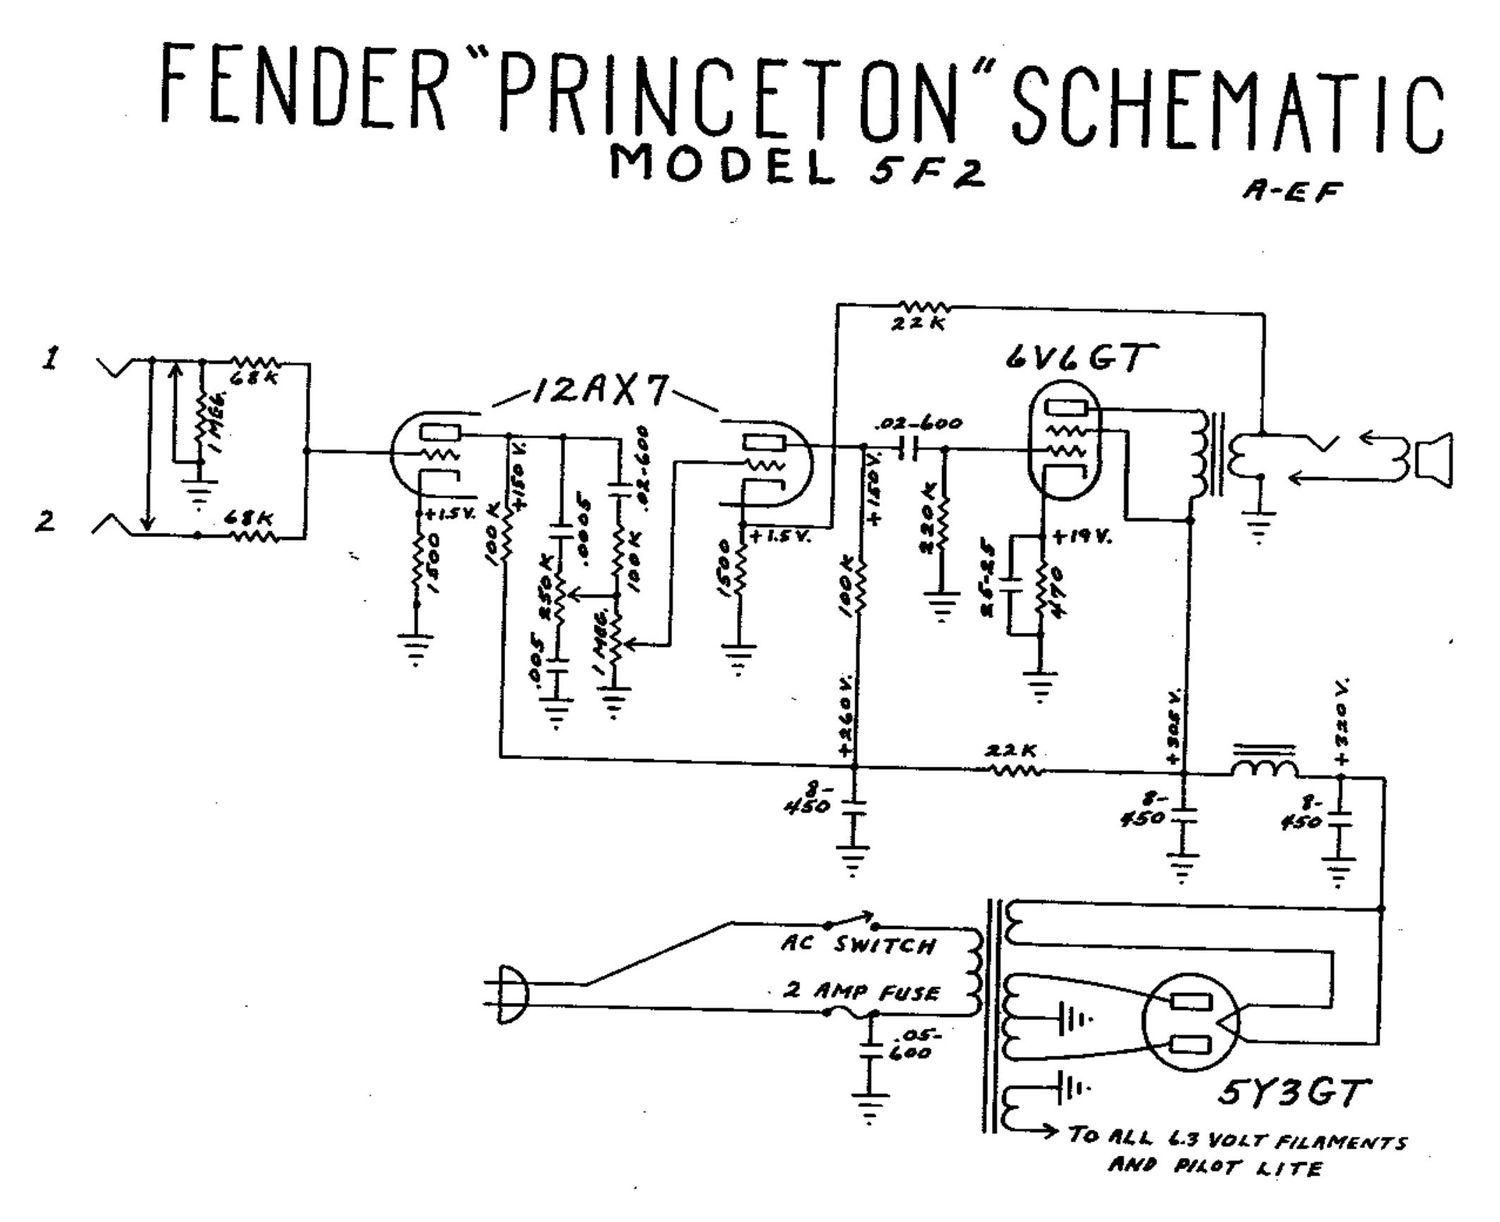 fender princeton 5f2 schematic